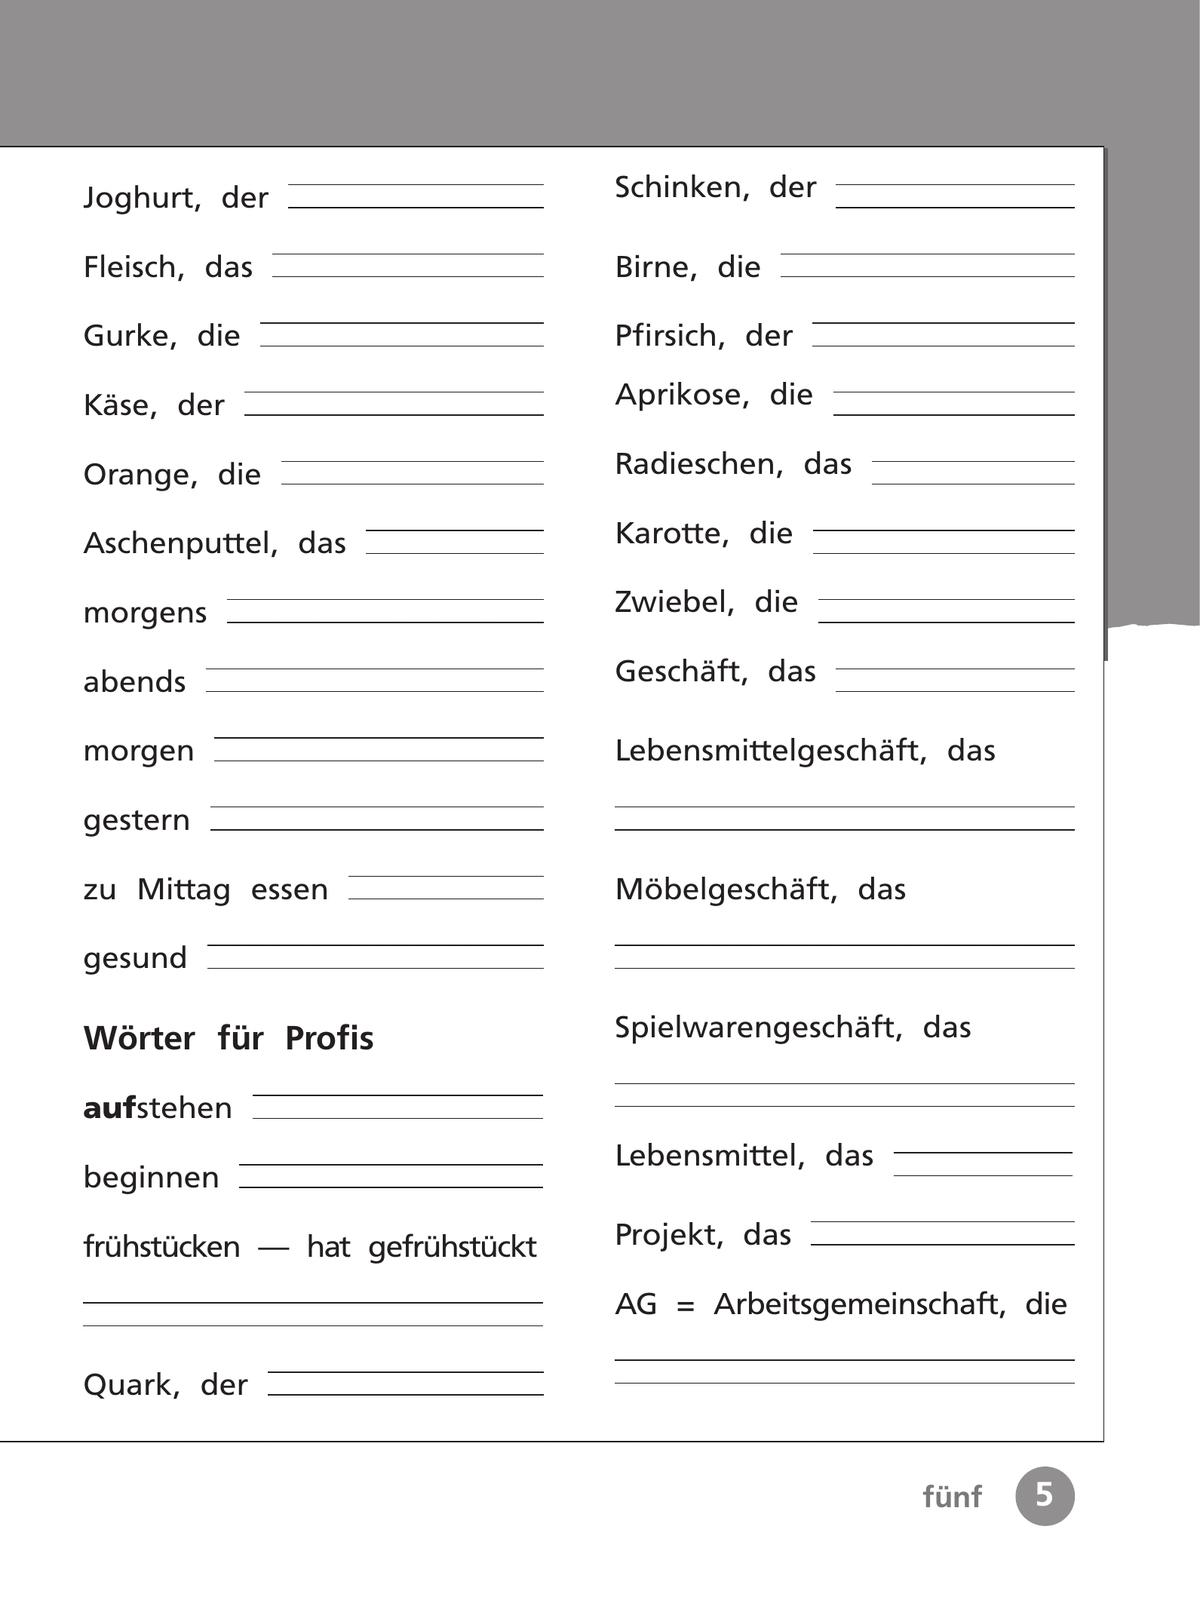 Немецкий язык. Рабочая тетрадь. 3 класс В 2-х ч. Ч. 2 11